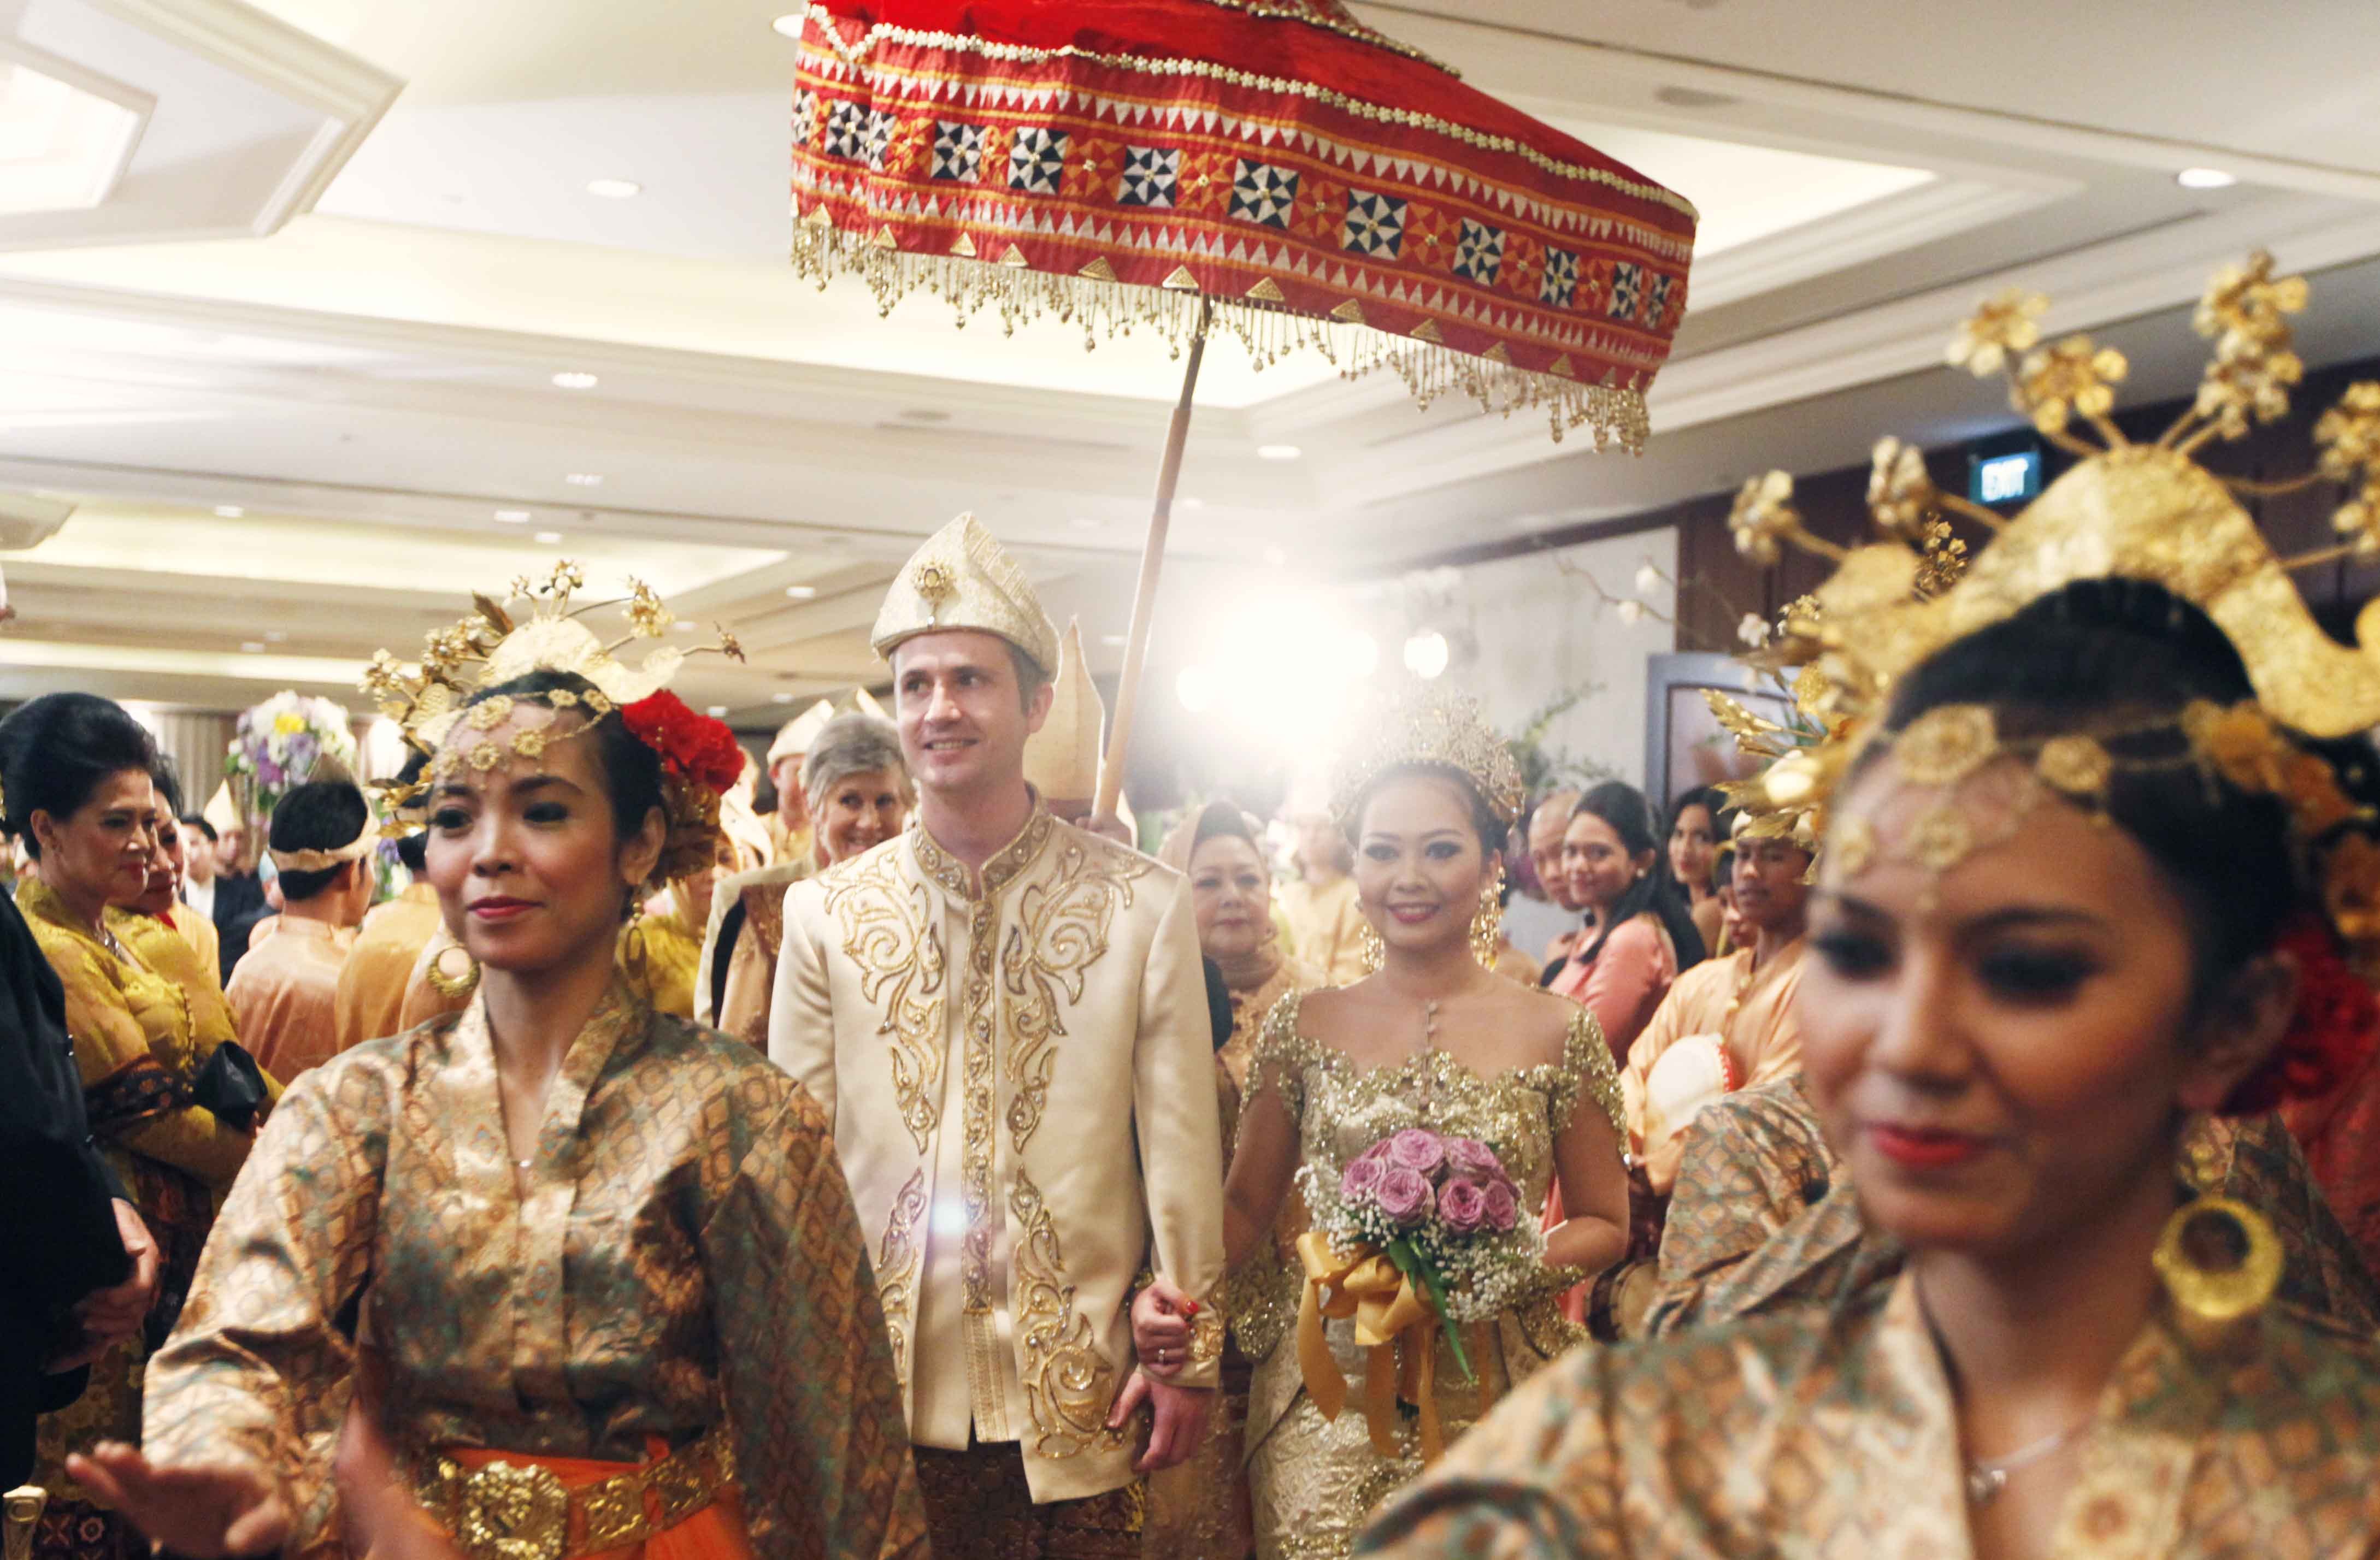 Pantun pun dilakukan di berbagai kegiatan masyarakat Melayu, dalam upacara pernikahan misalnya (foto: thebridedetpt.com)